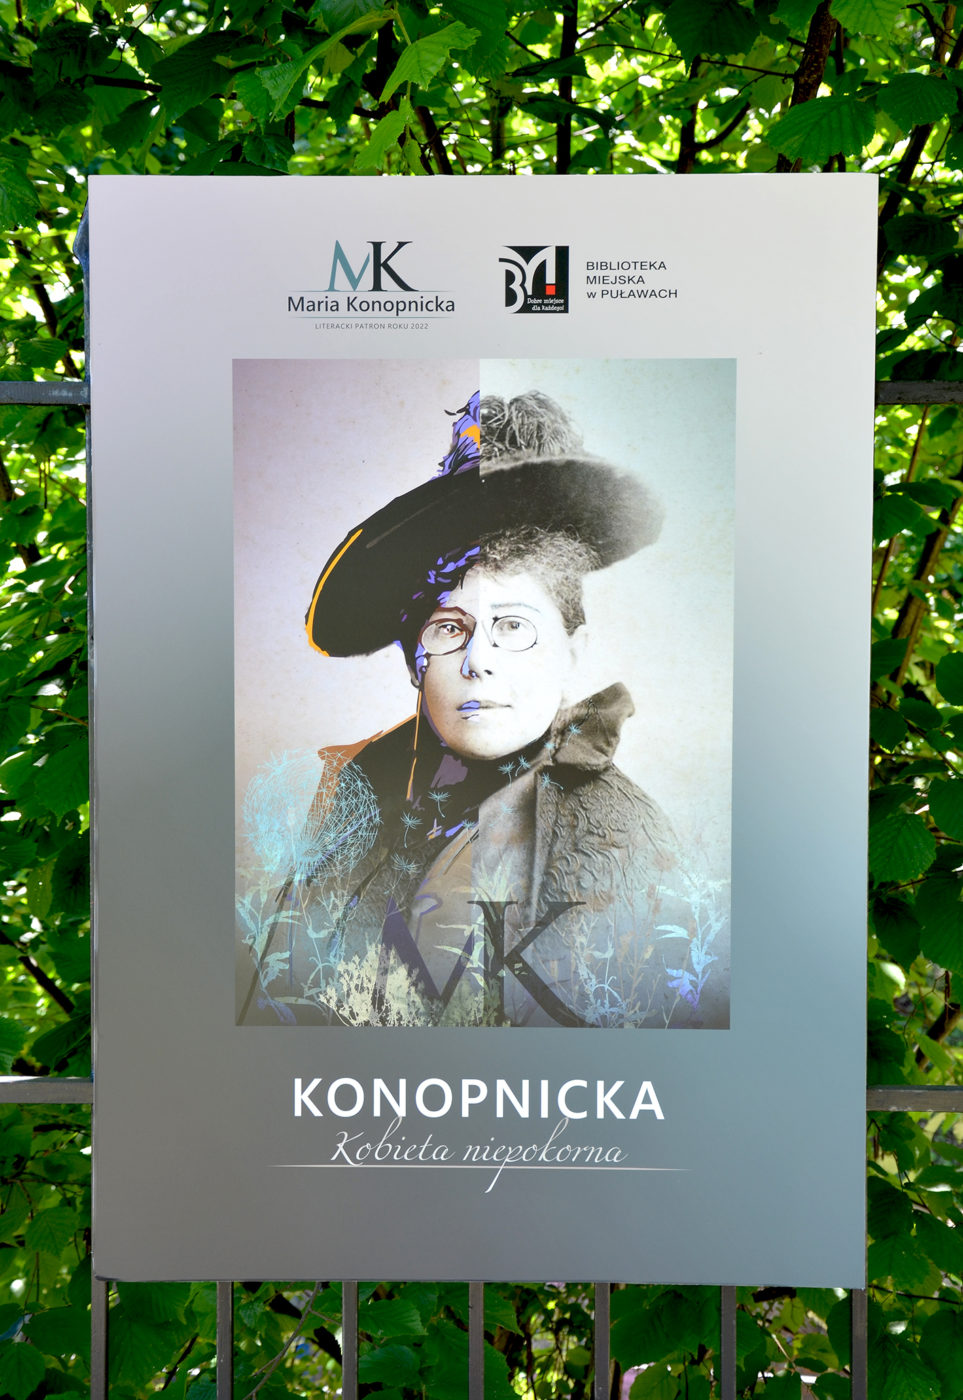 Zdjęcie prezentujące planszę otwierającą wystawę "Konopnicka. Kobieta niepokorna", przedstawiającą popiersie Marii Konopnickiej.